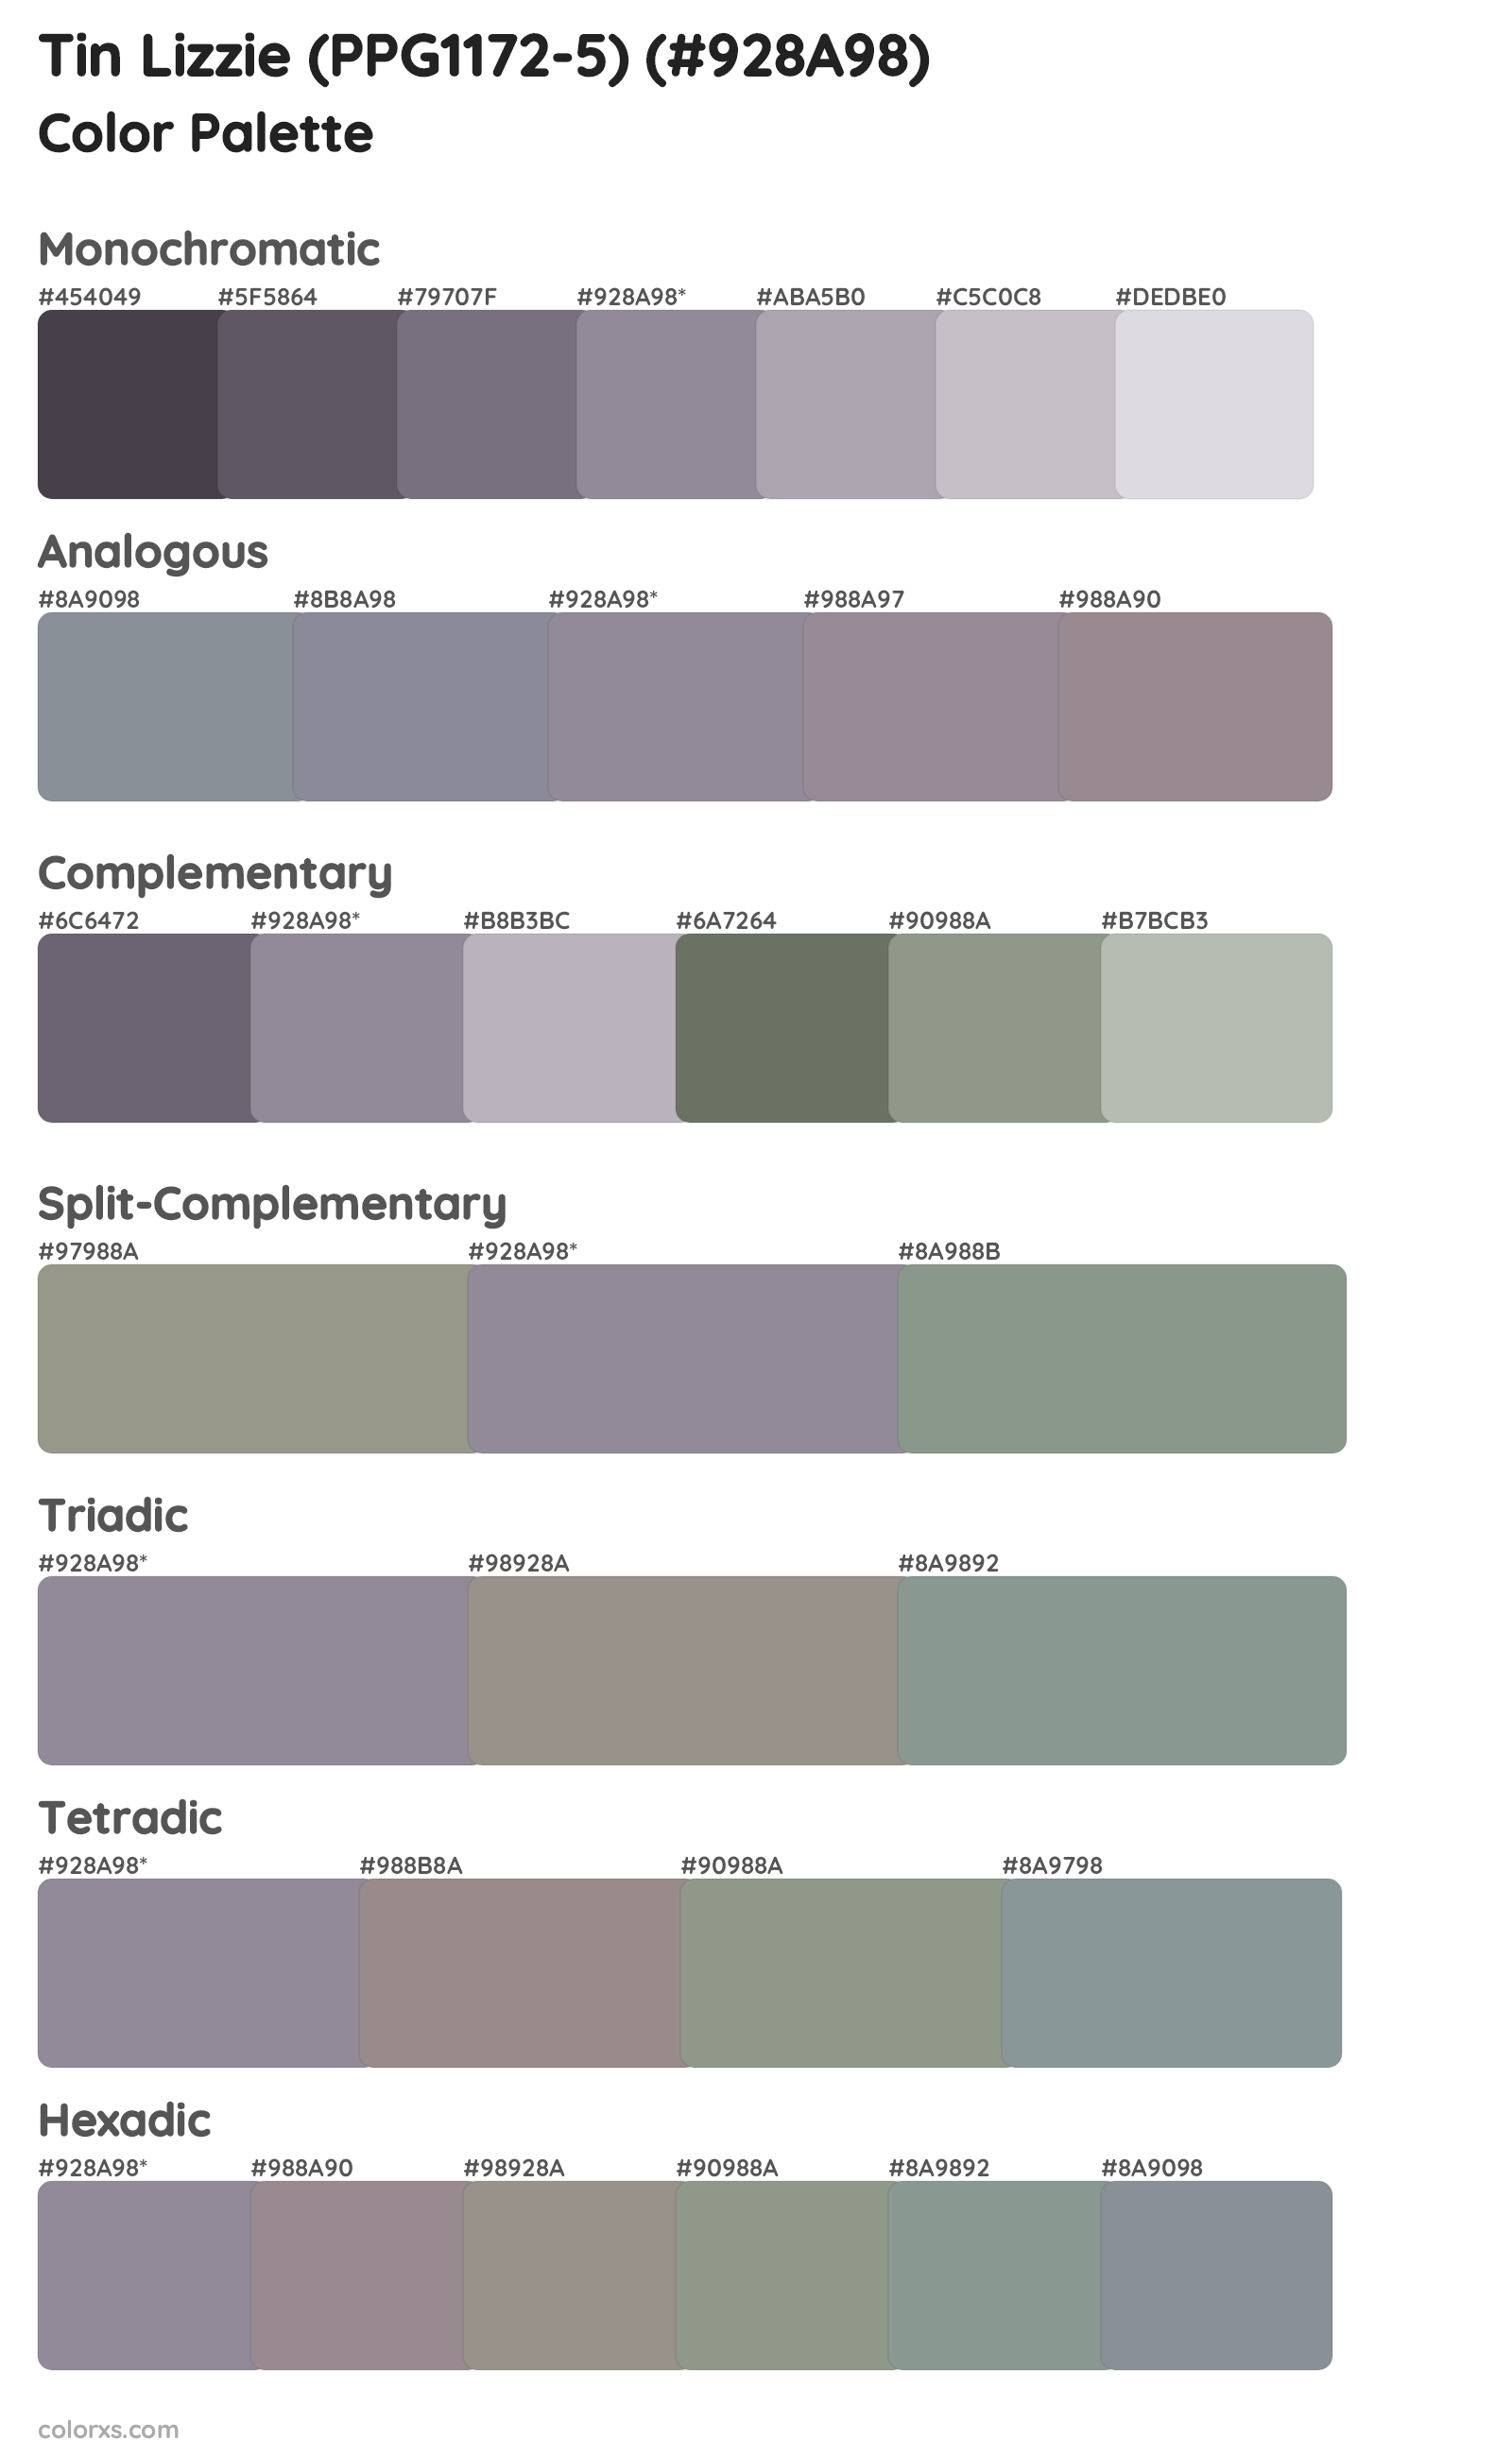 Tin Lizzie (PPG1172-5) Color Scheme Palettes